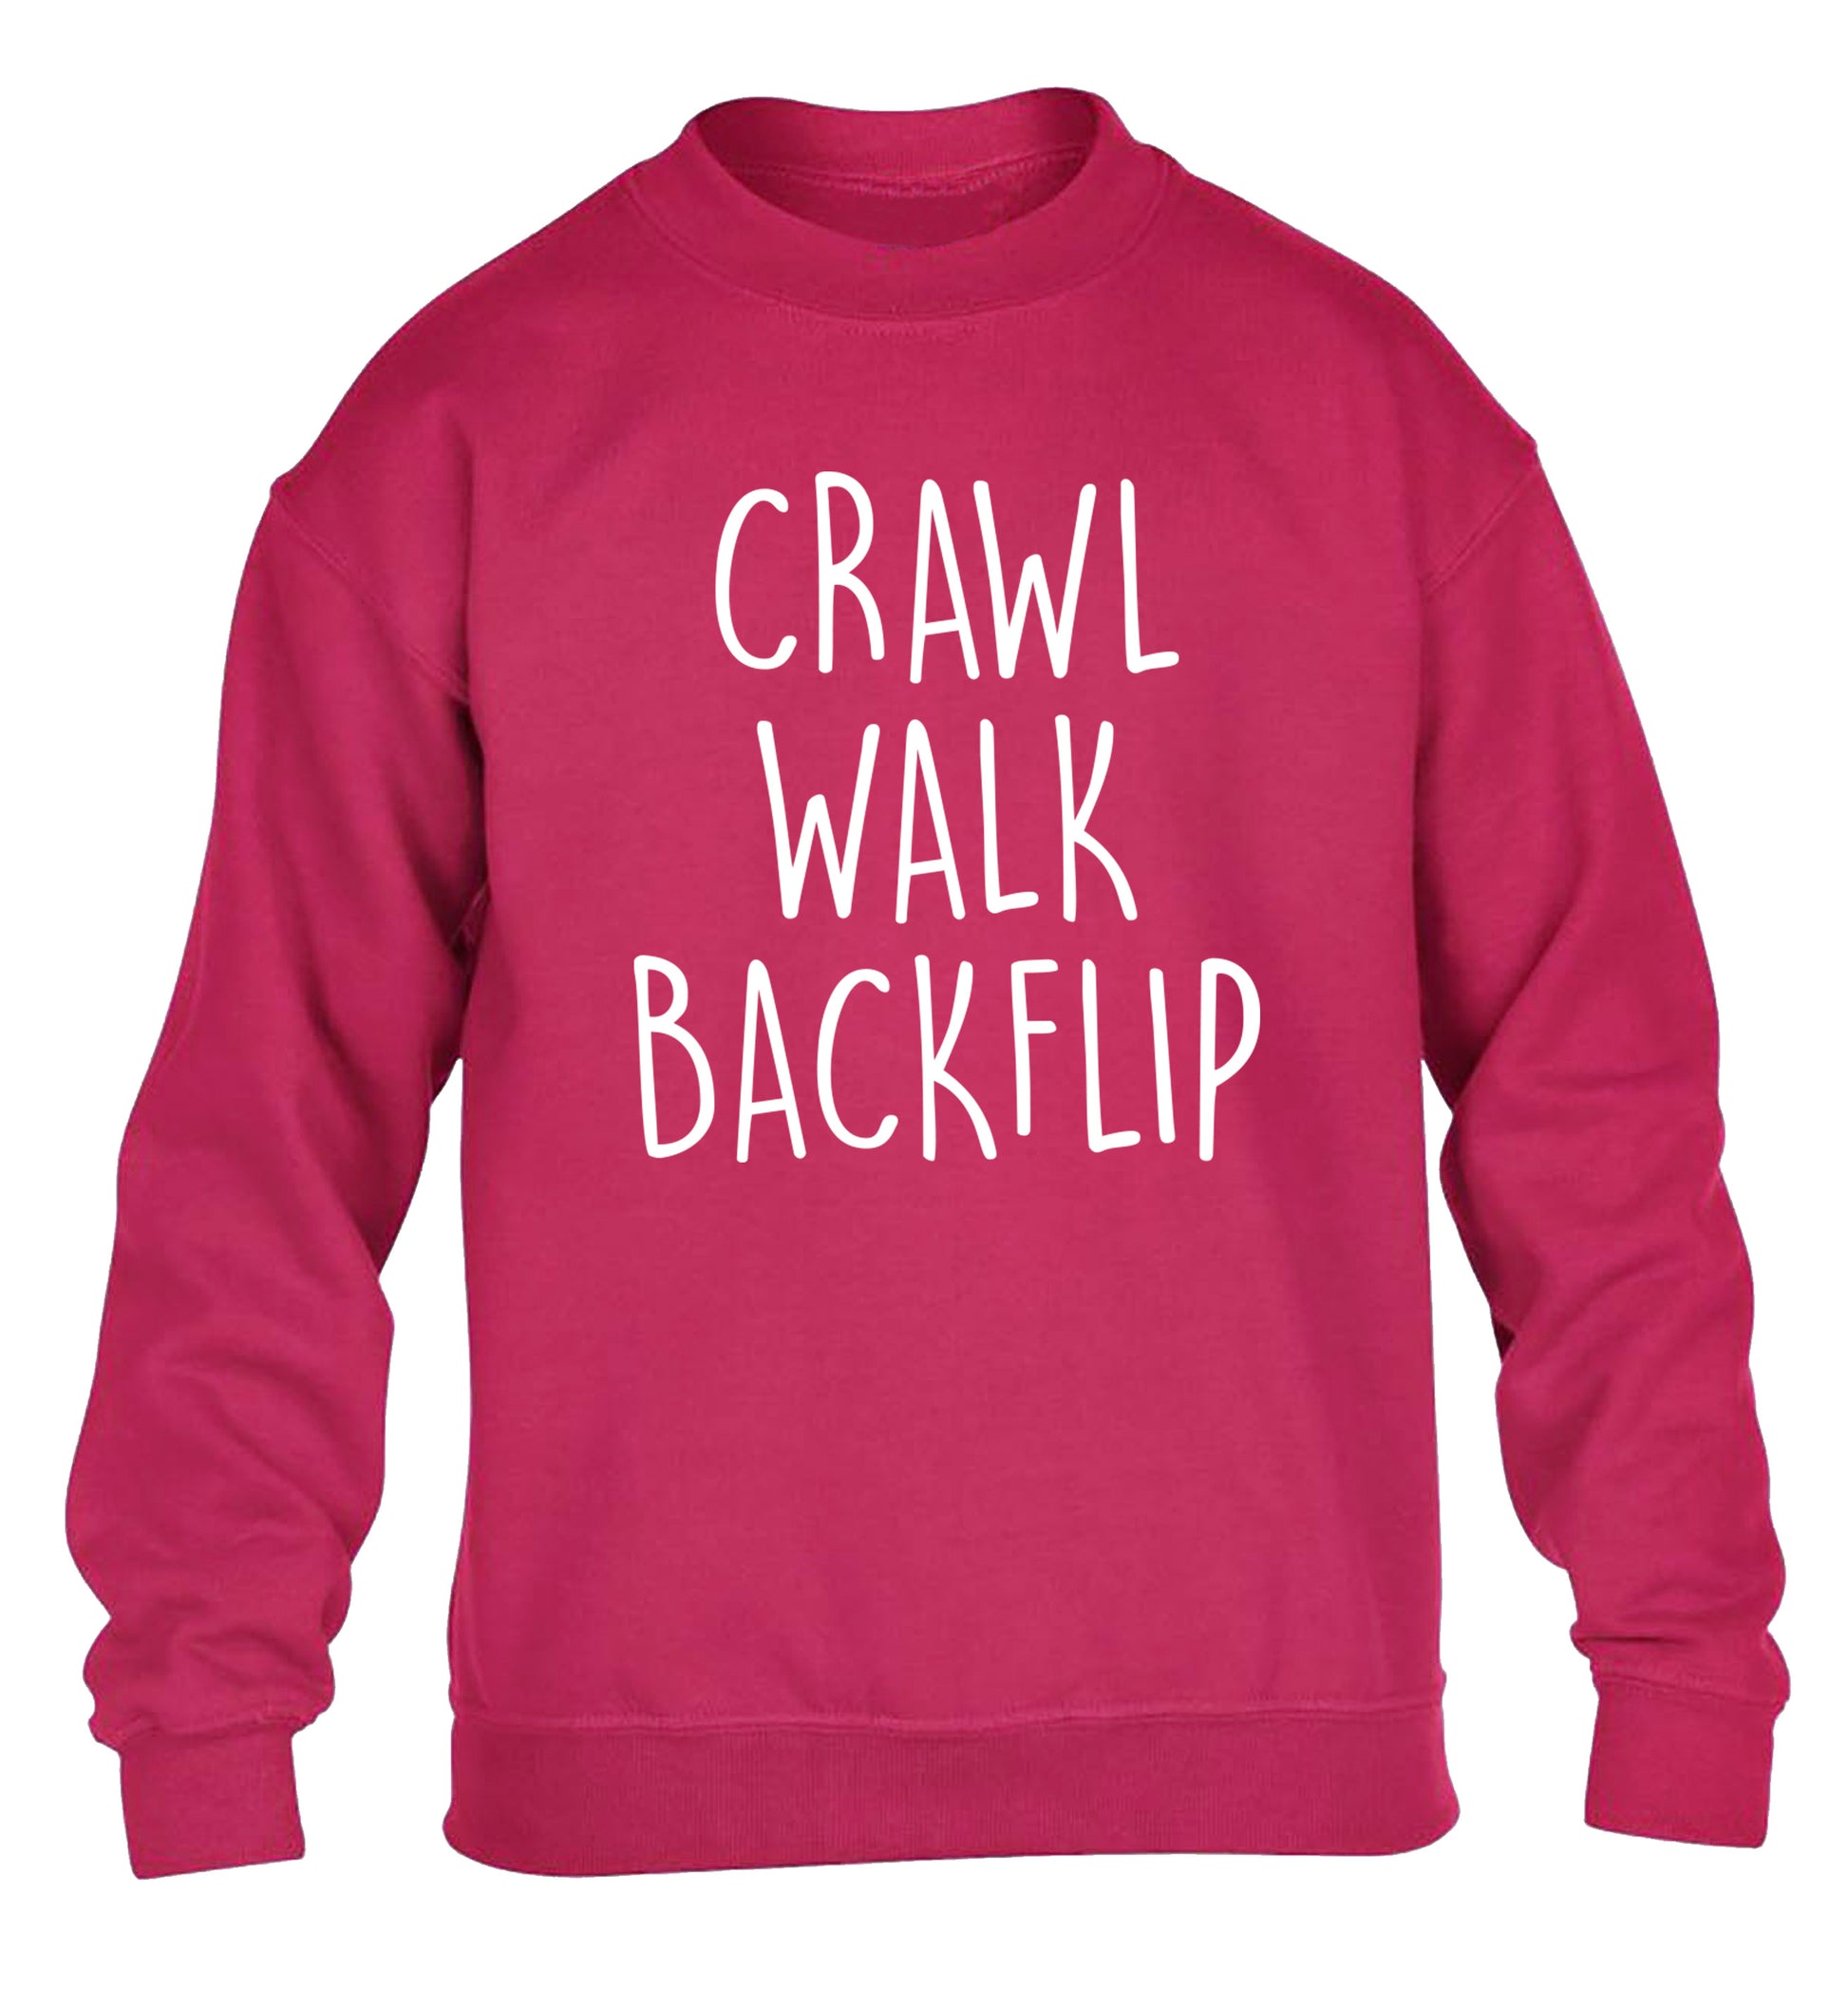 Crawl Walk Backflip children's pink sweater 12-13 Years